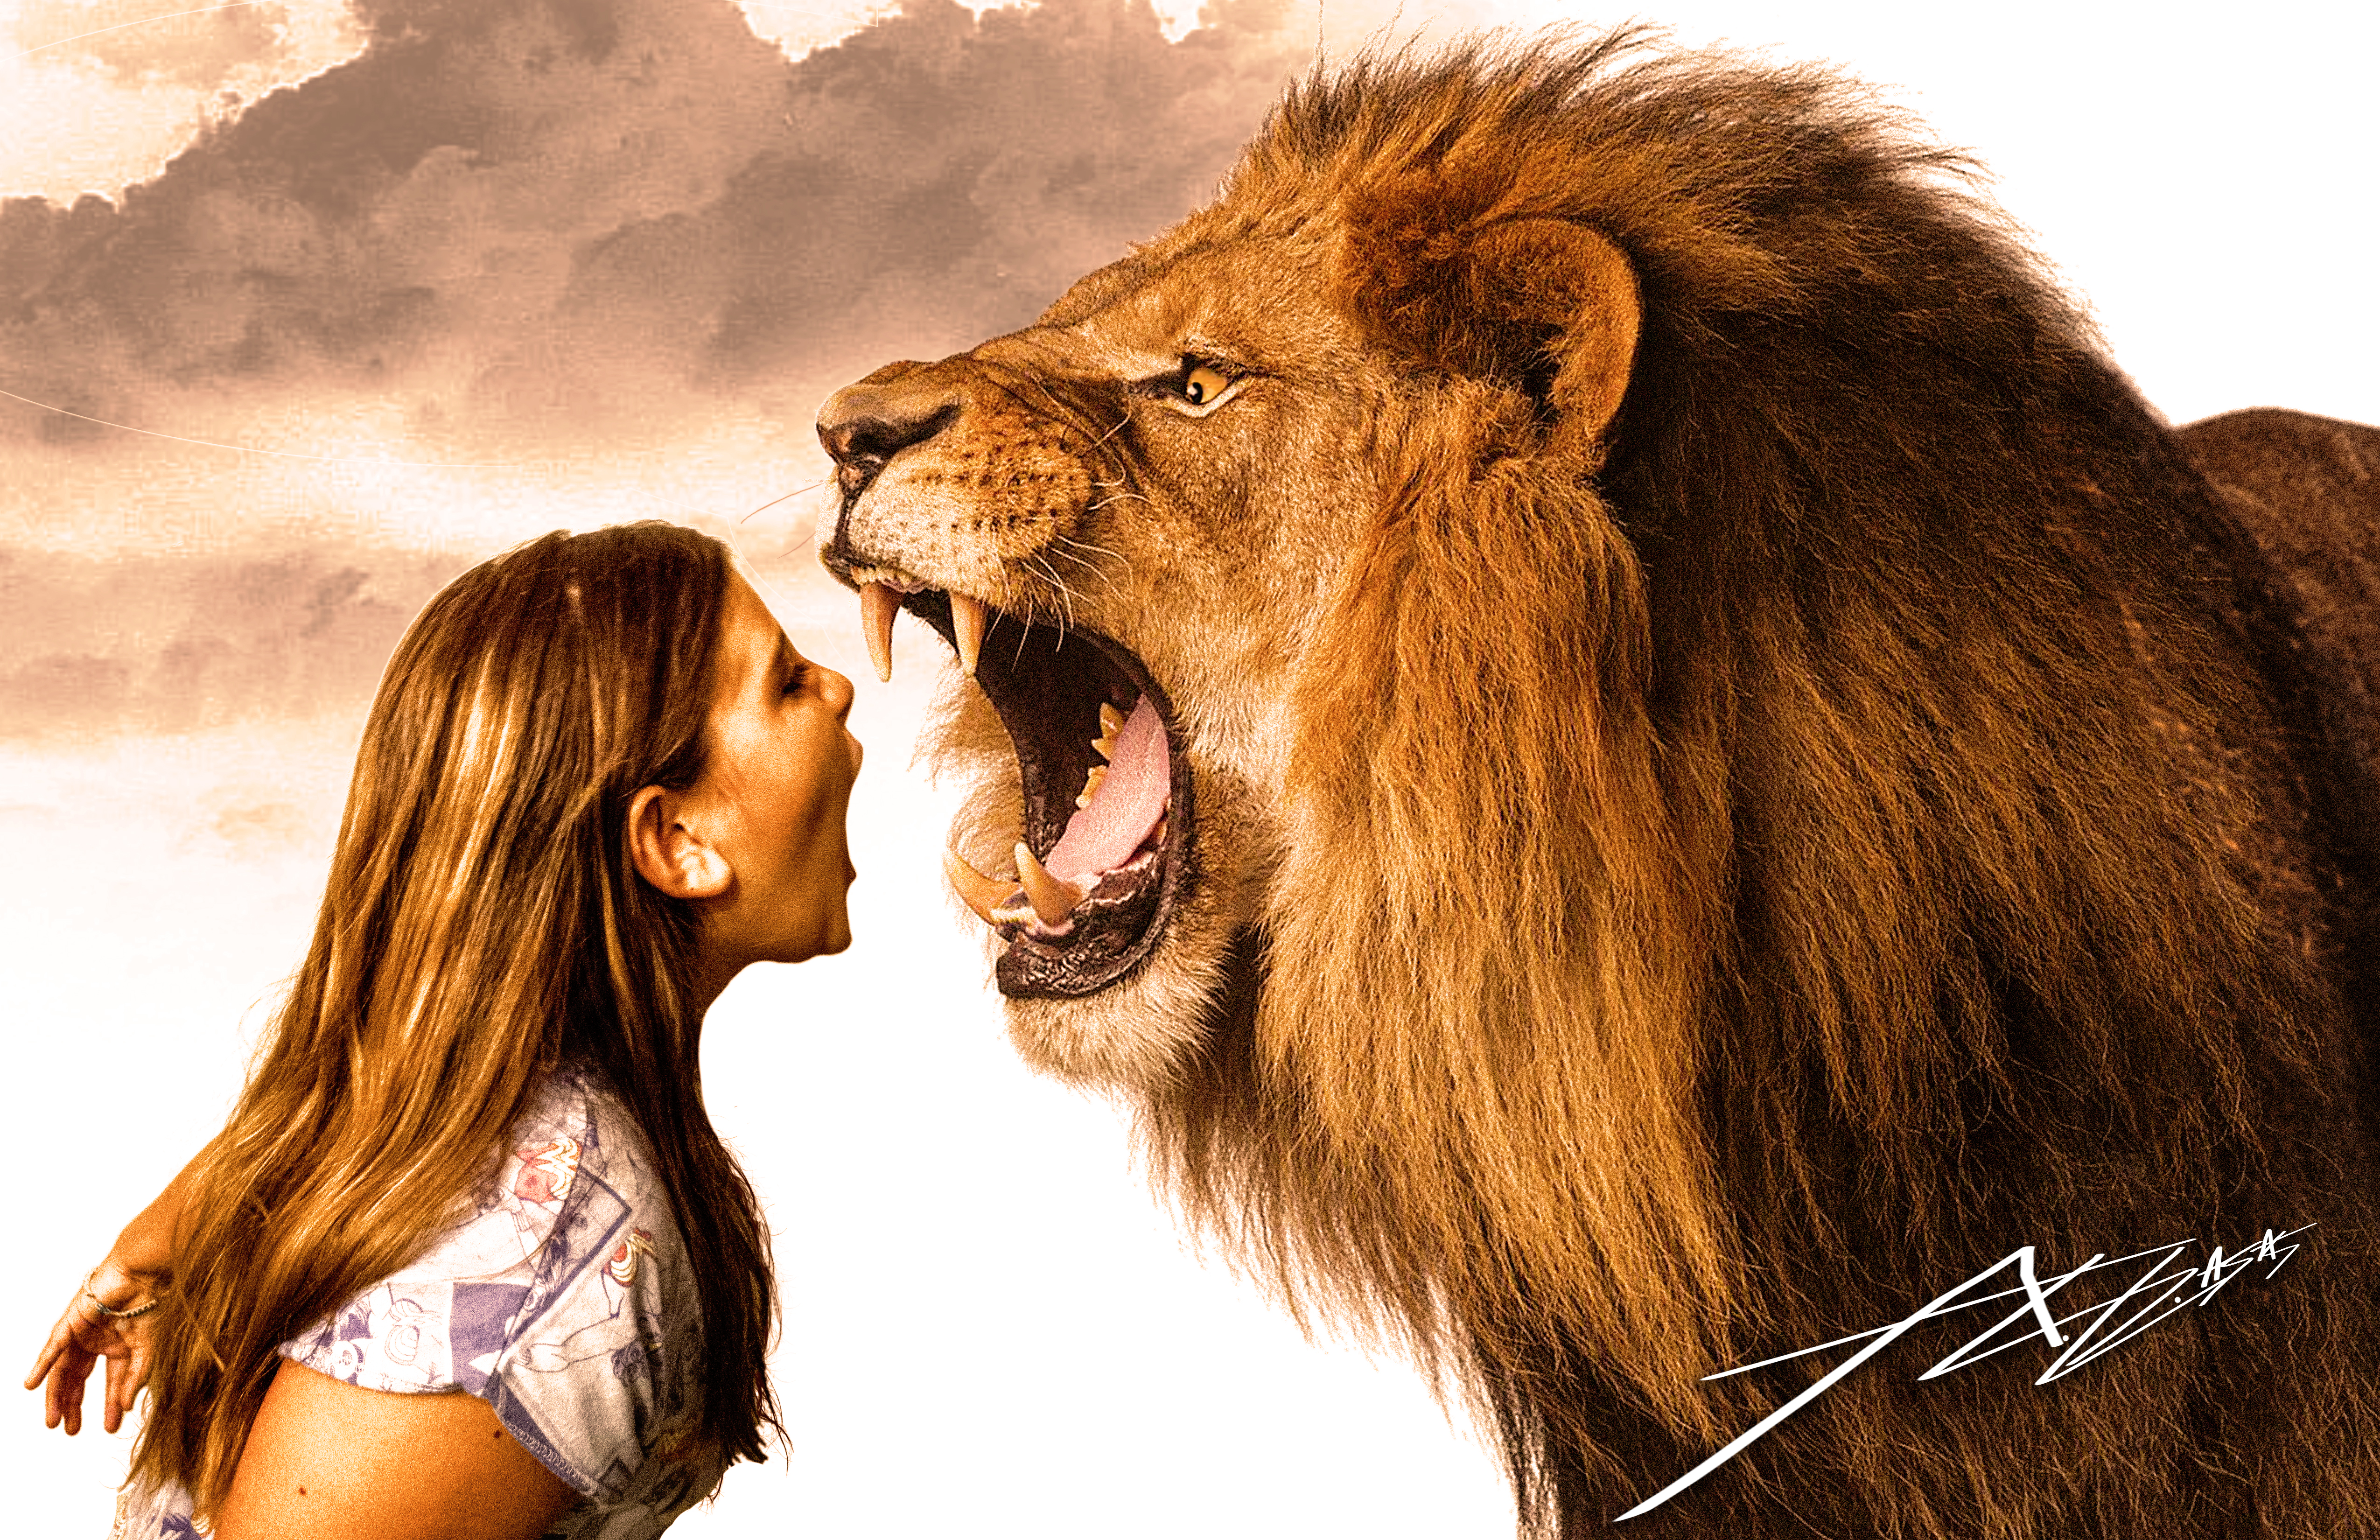 Lion Roar by starkatts on DeviantArt